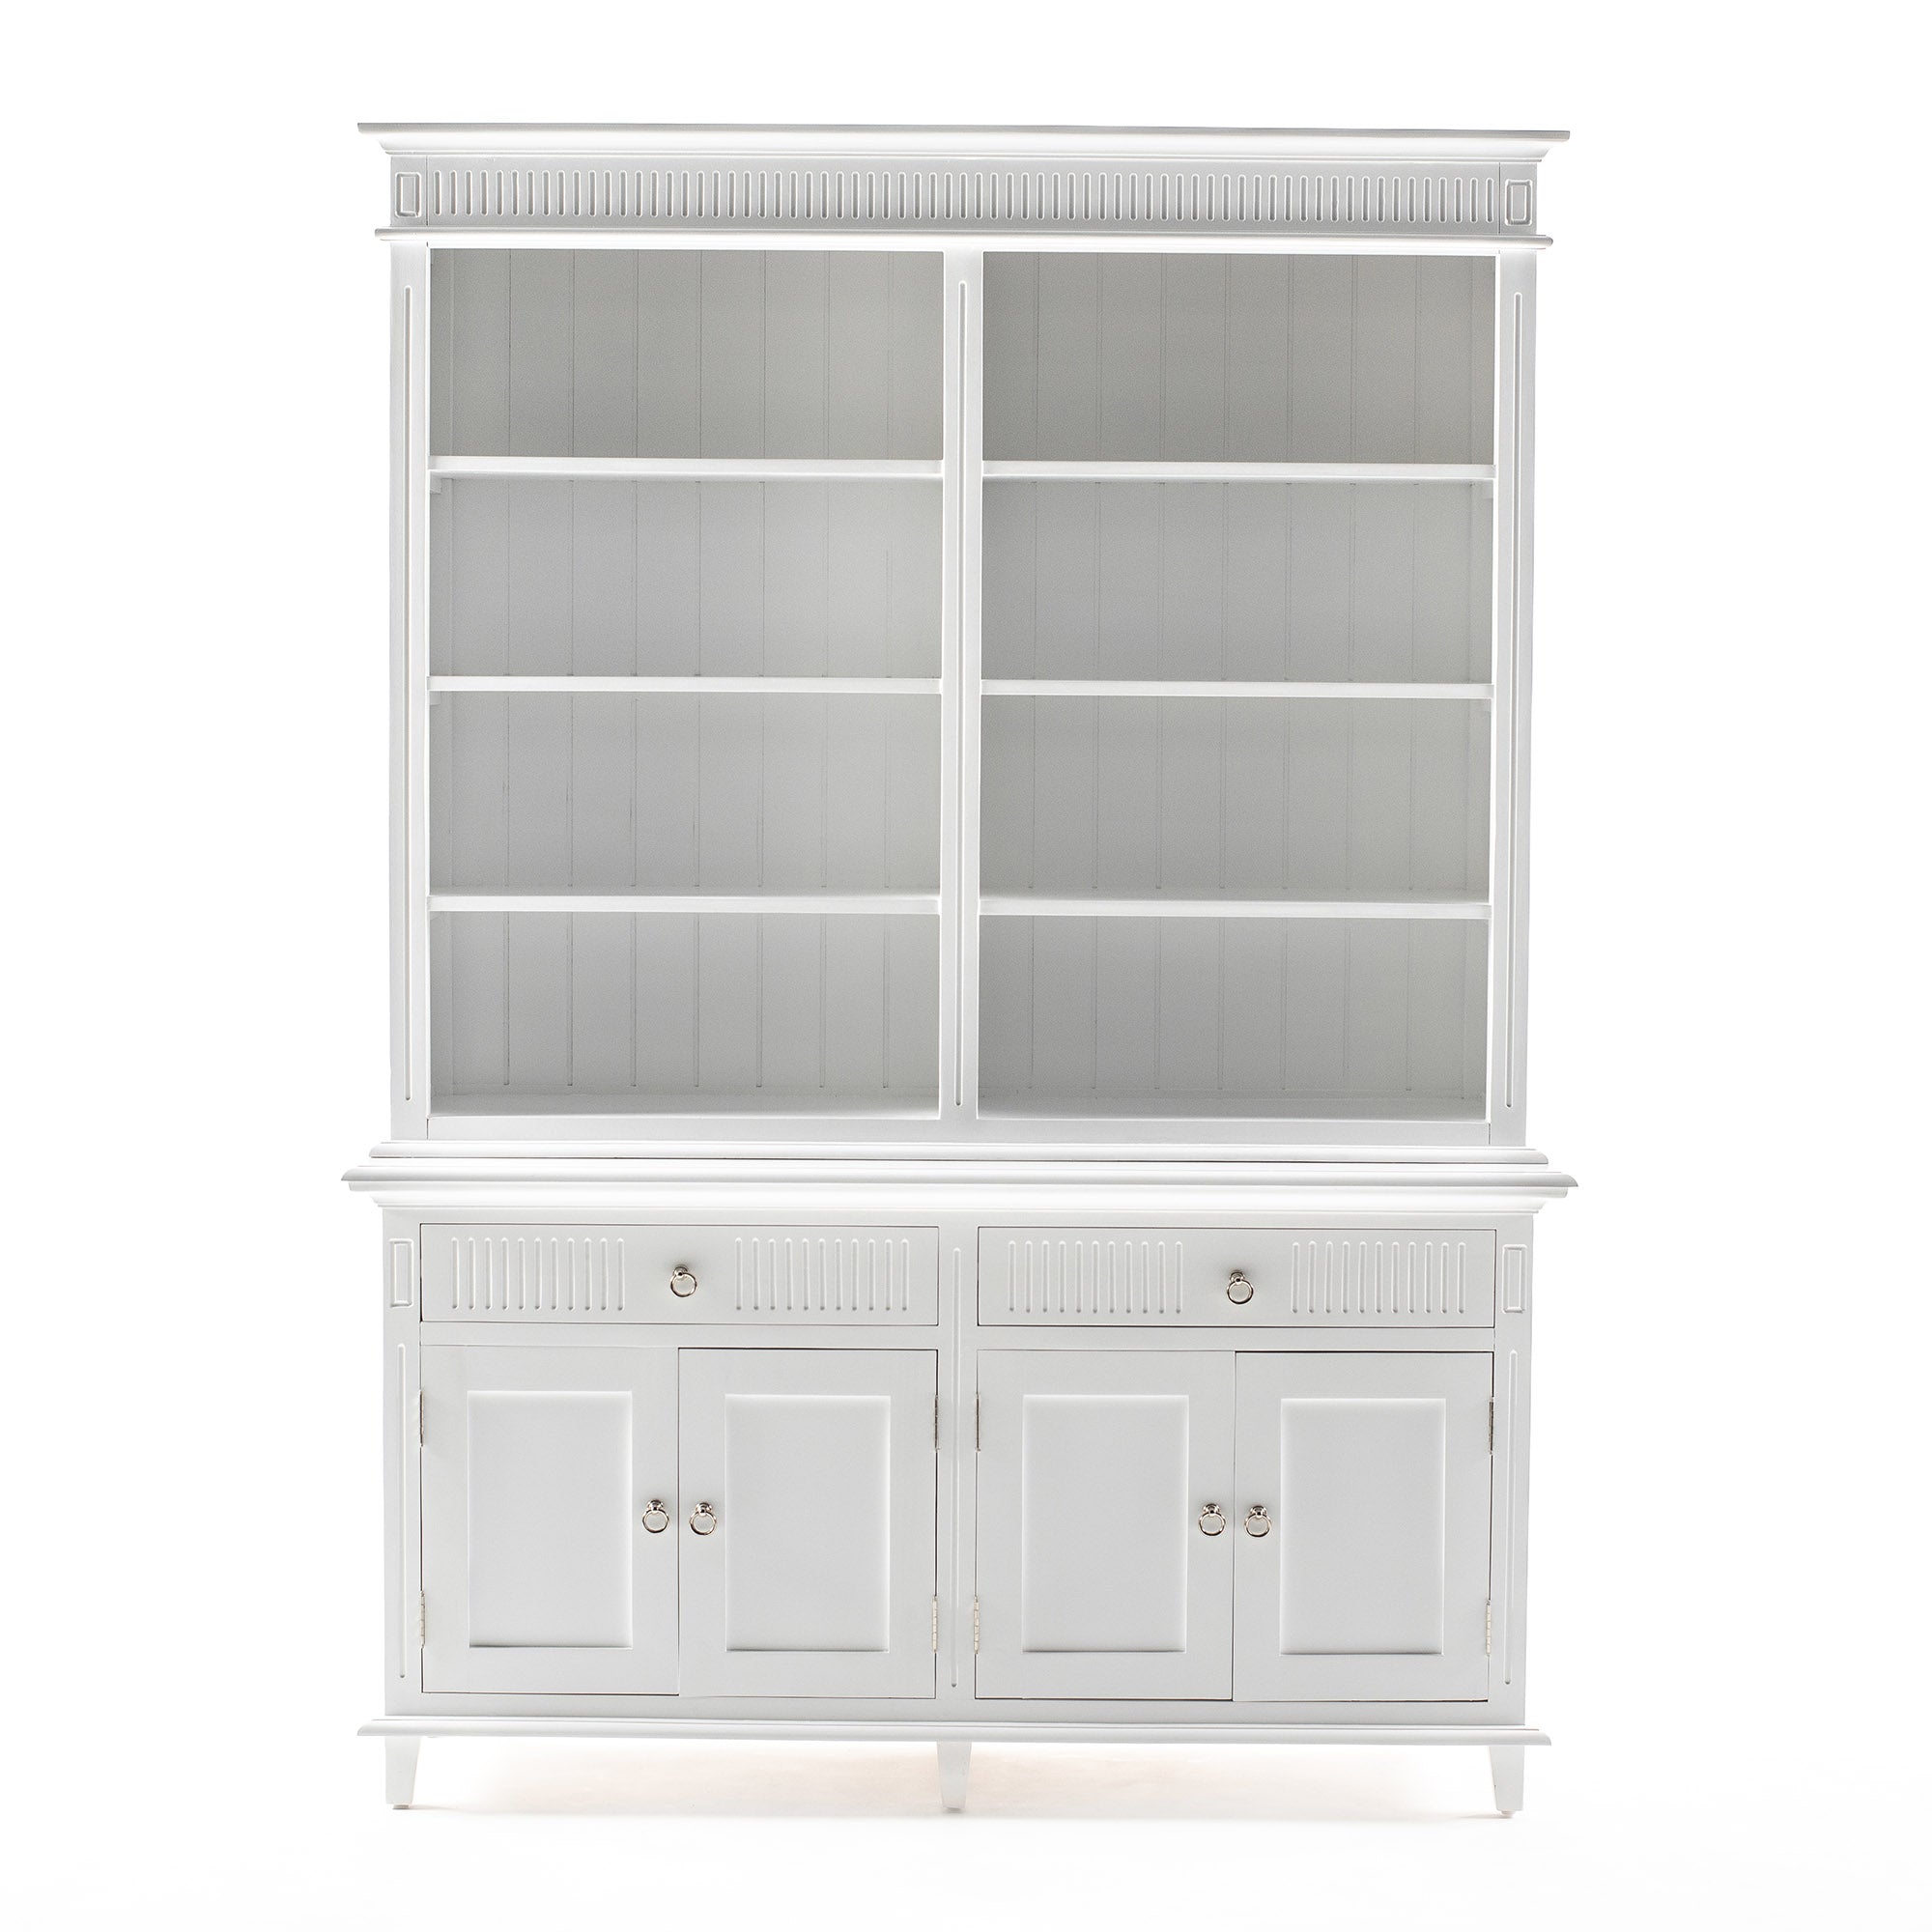 Skansen Nordic Design Classic White Hutch Bookcase Unit